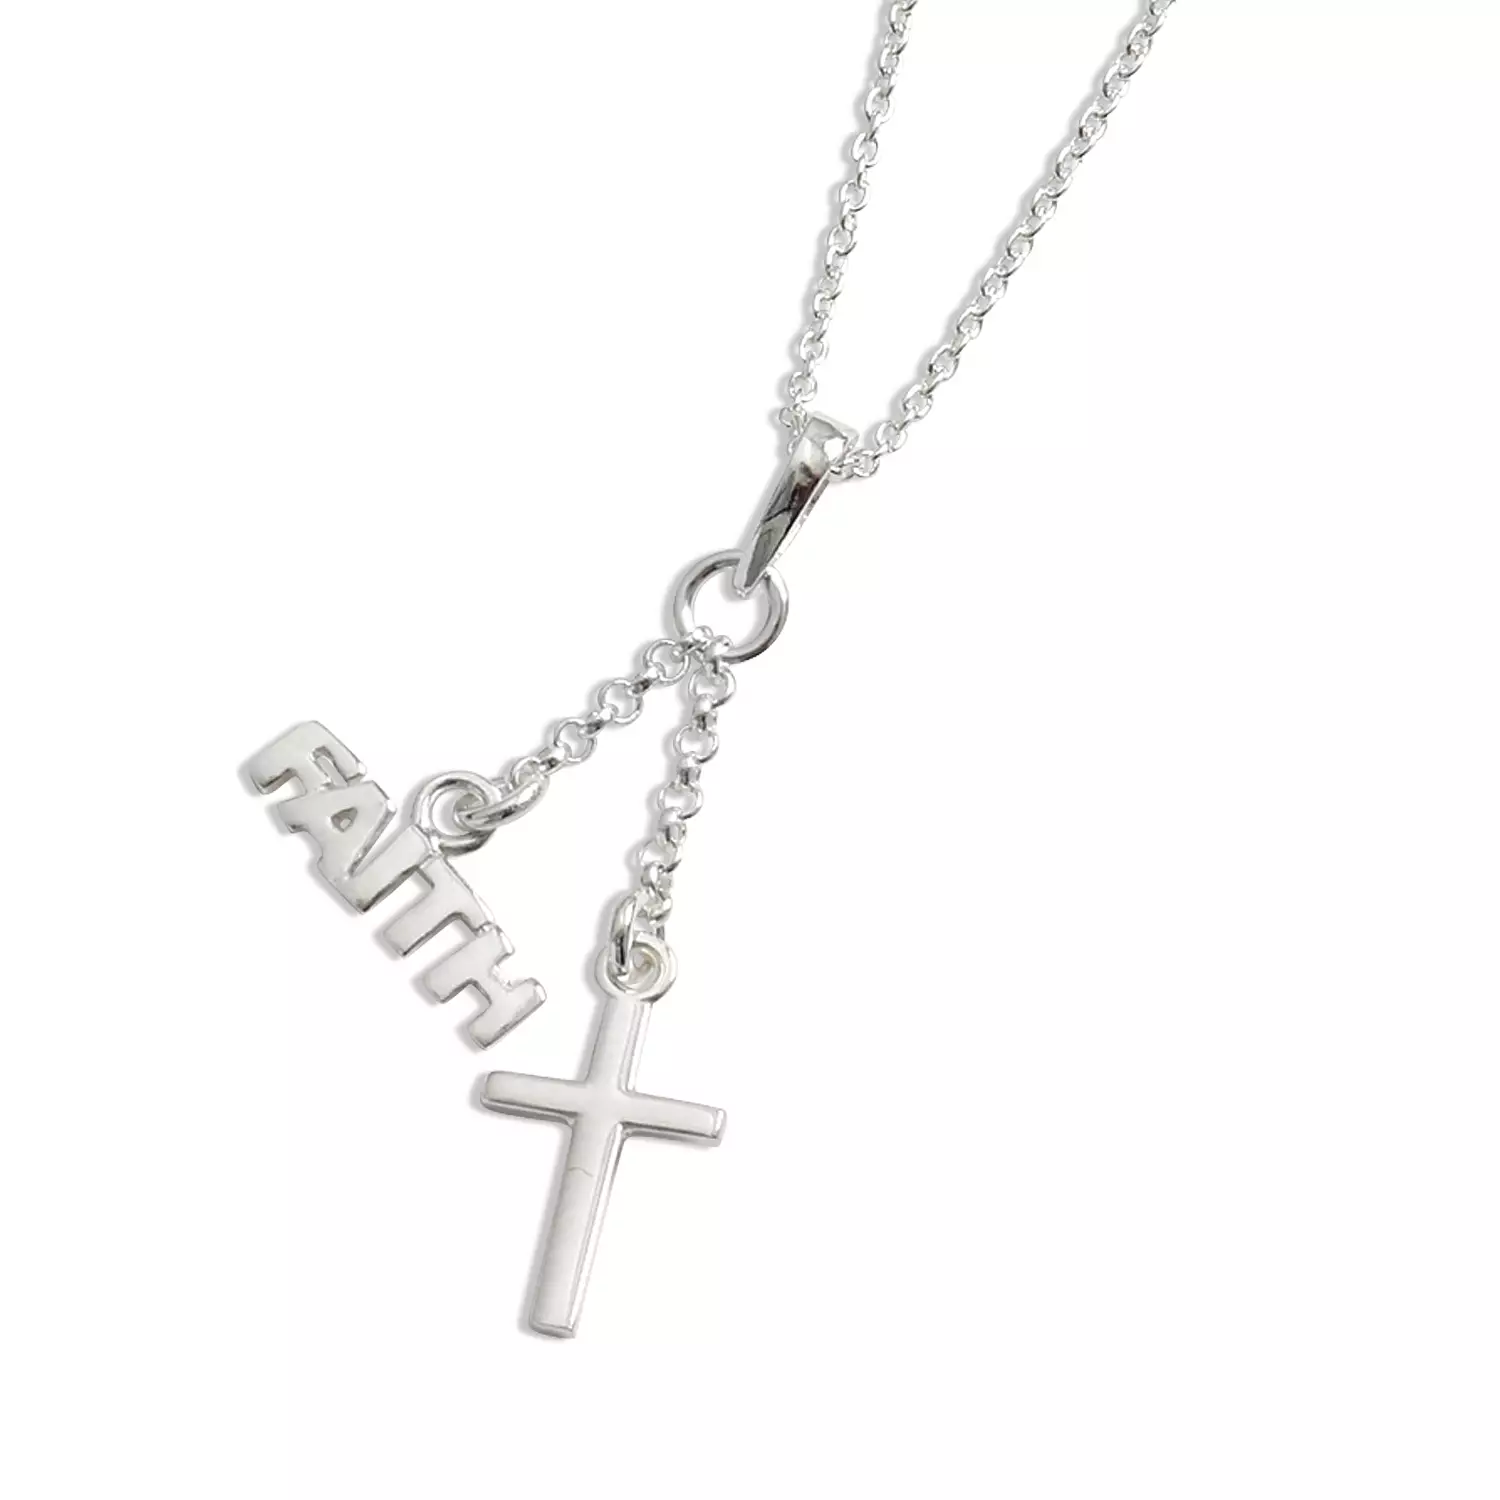 Silver Cross and 'FAITH' pendant